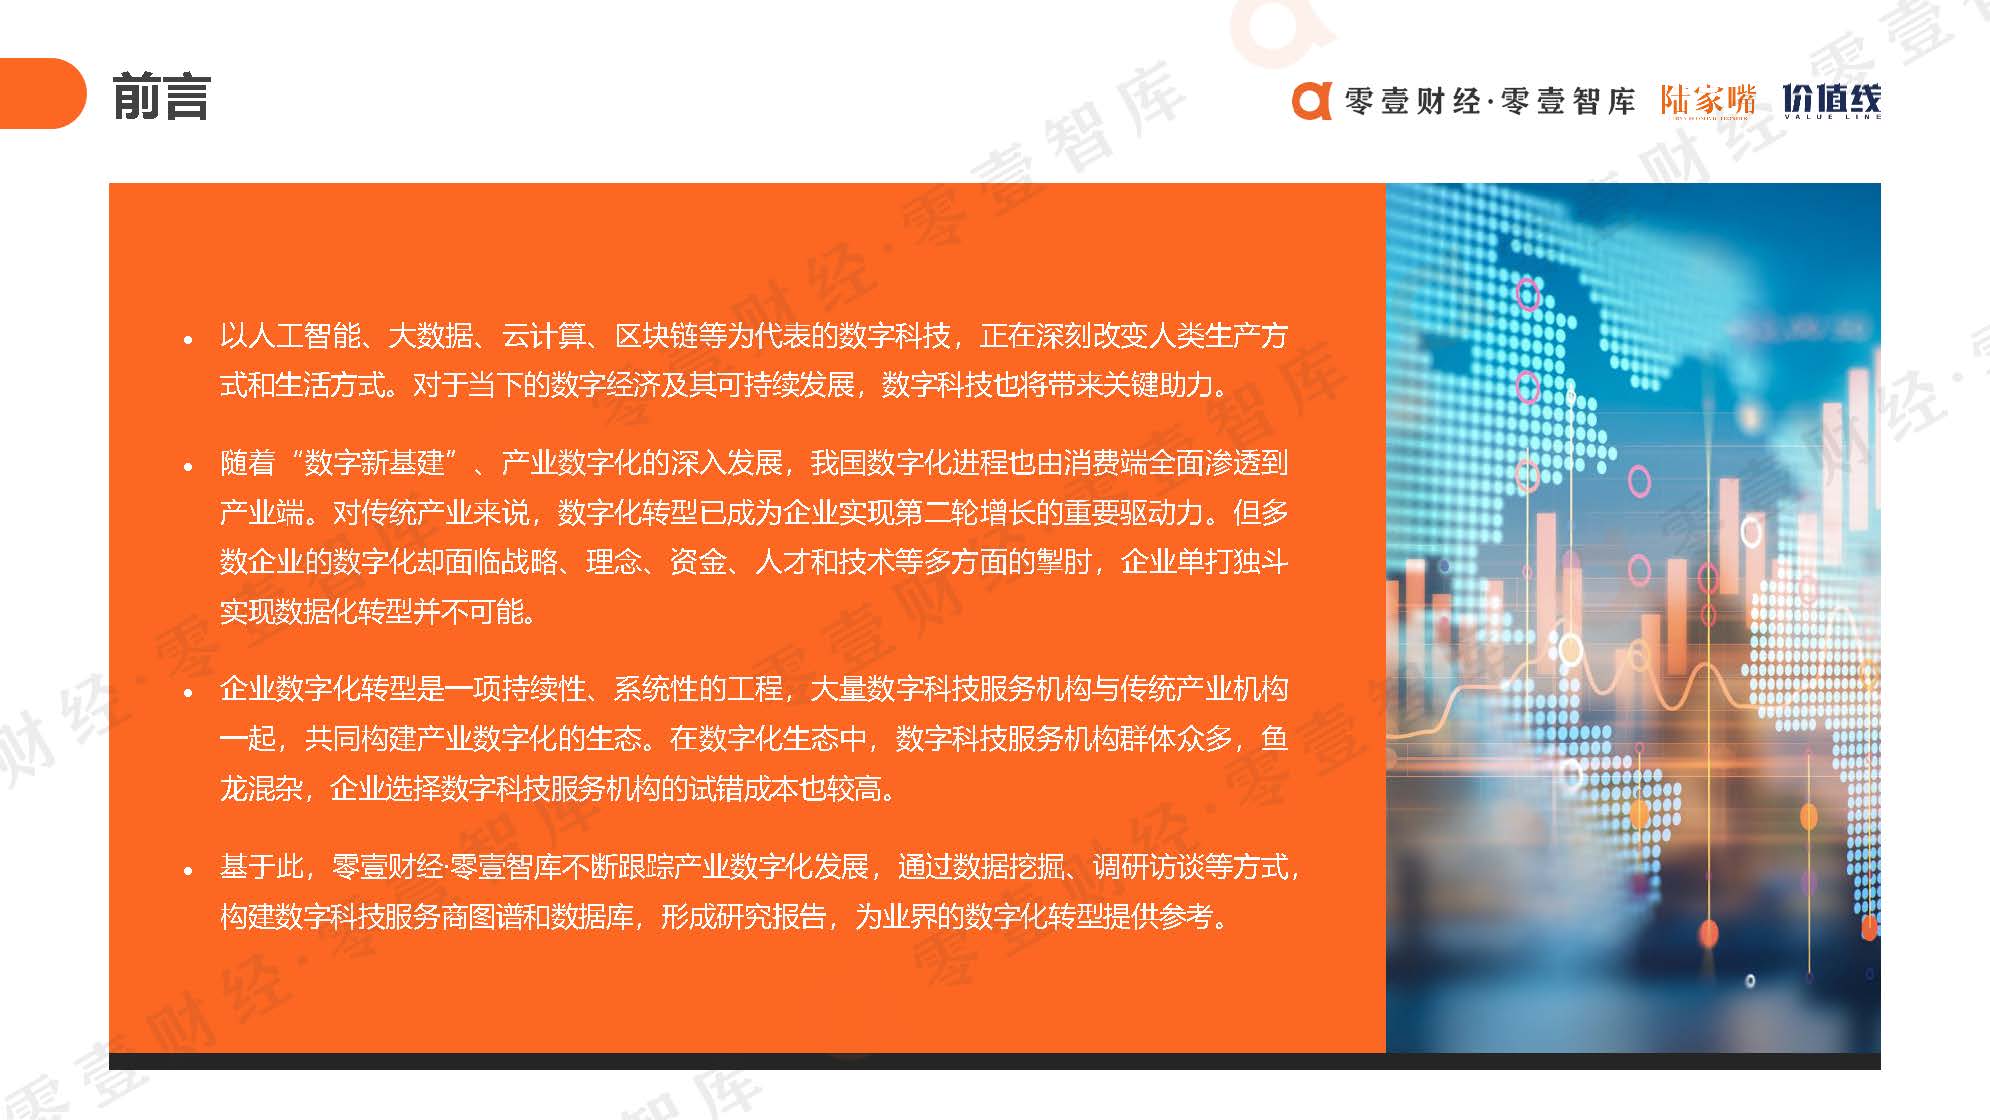 中国数字科技服务商图谱报告